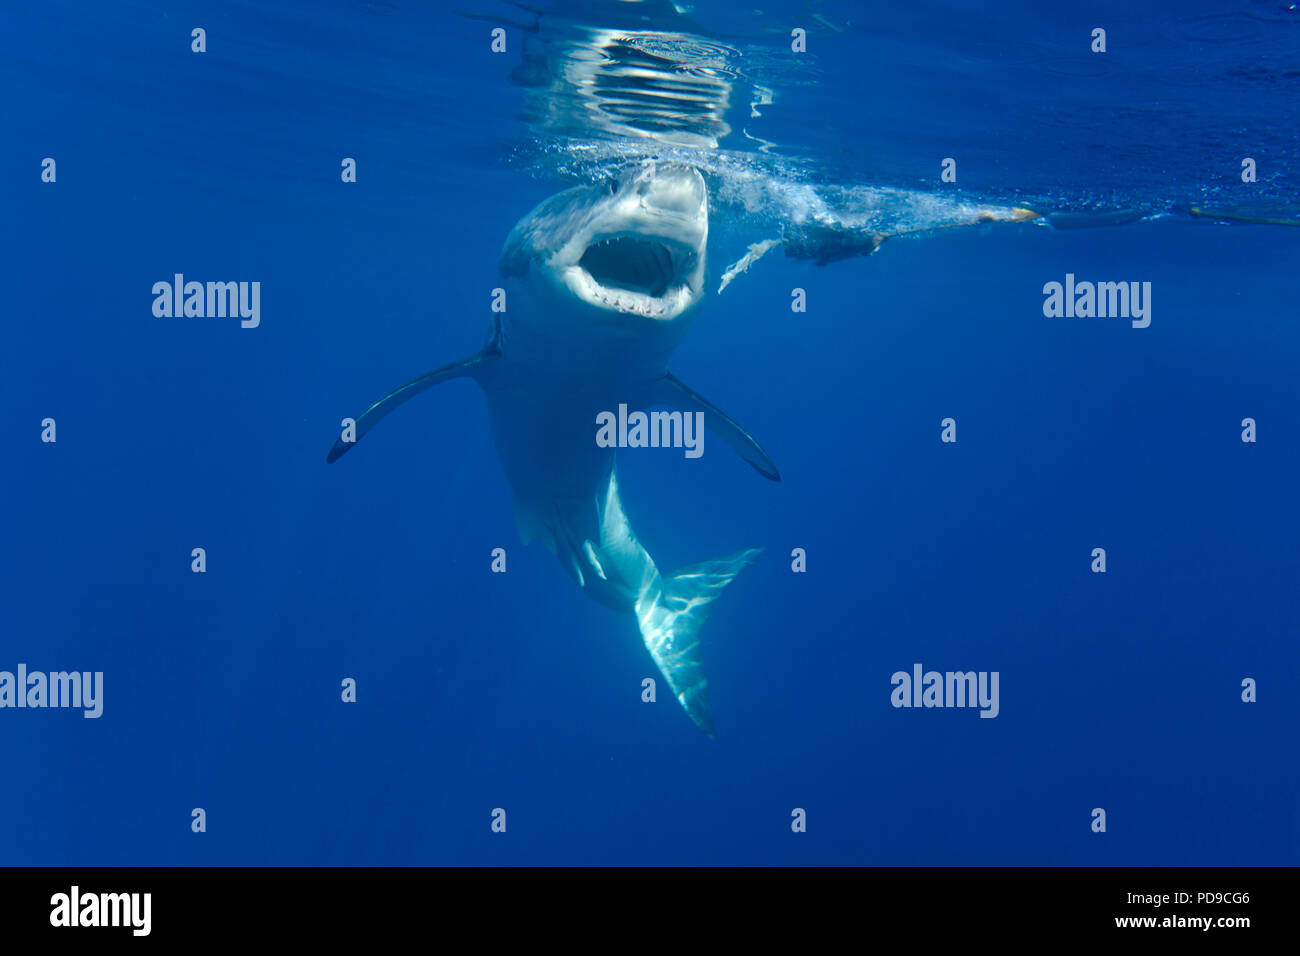 Ce grand requin blanc, Carcharodon carcharias, a été photographié à la poursuite d'un morceau d'appât sous la surface au large de l'île de Guadalupe, au Mexique. Banque D'Images